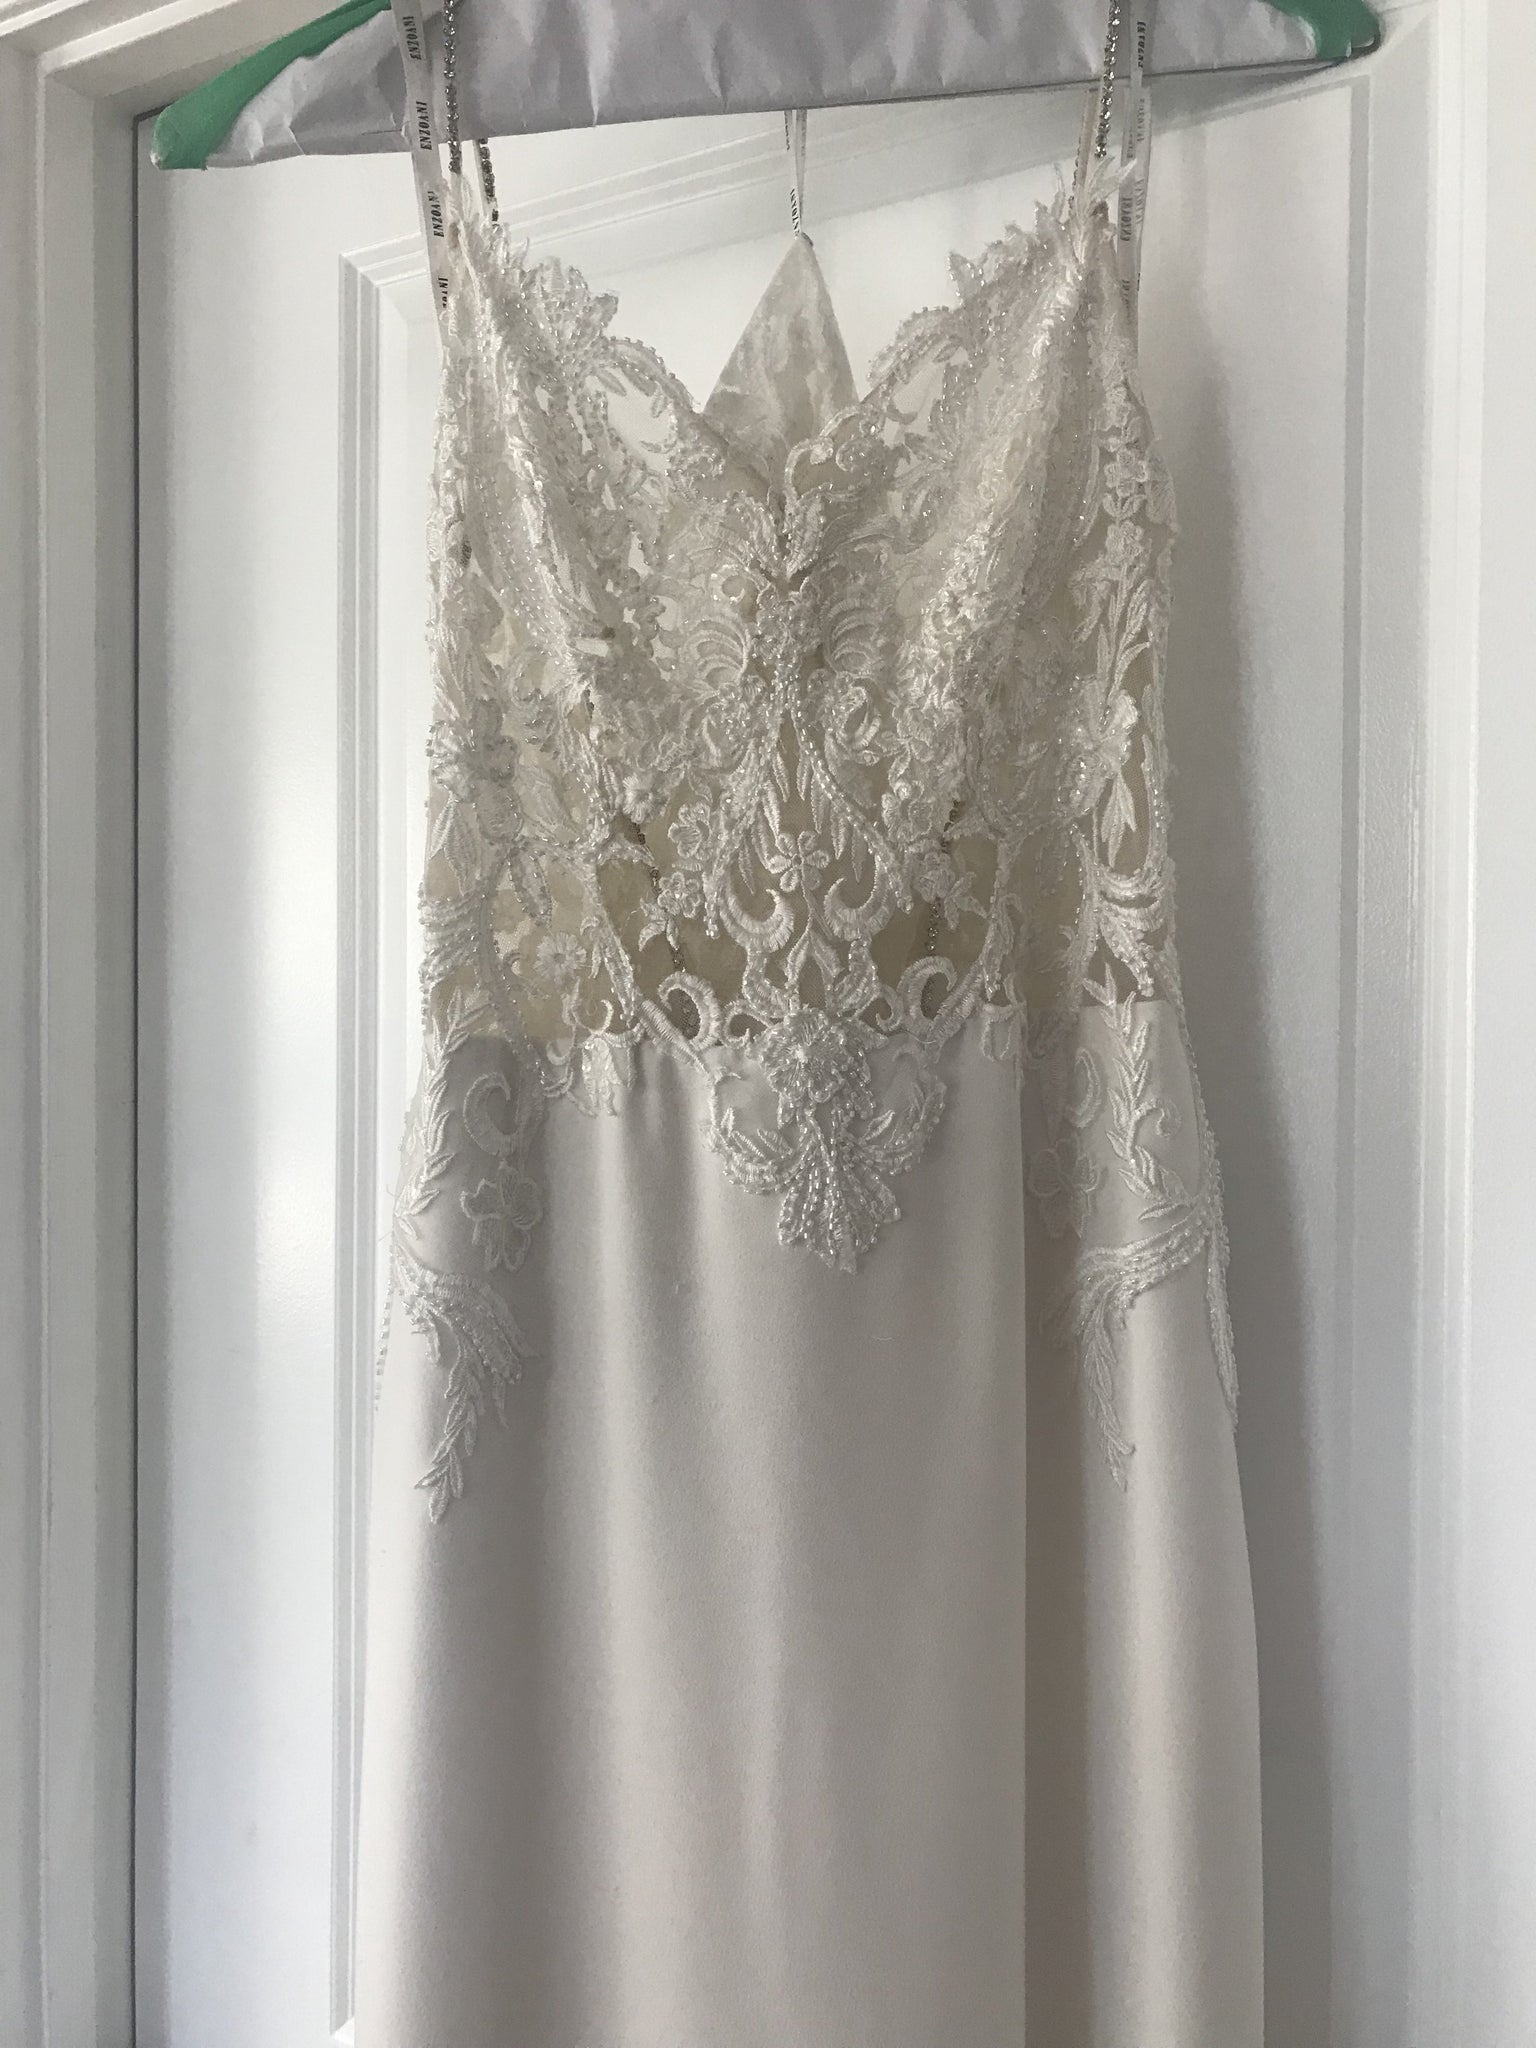 Enzoani 'Juri' size 2 used wedding dress – Nearly Newlywed